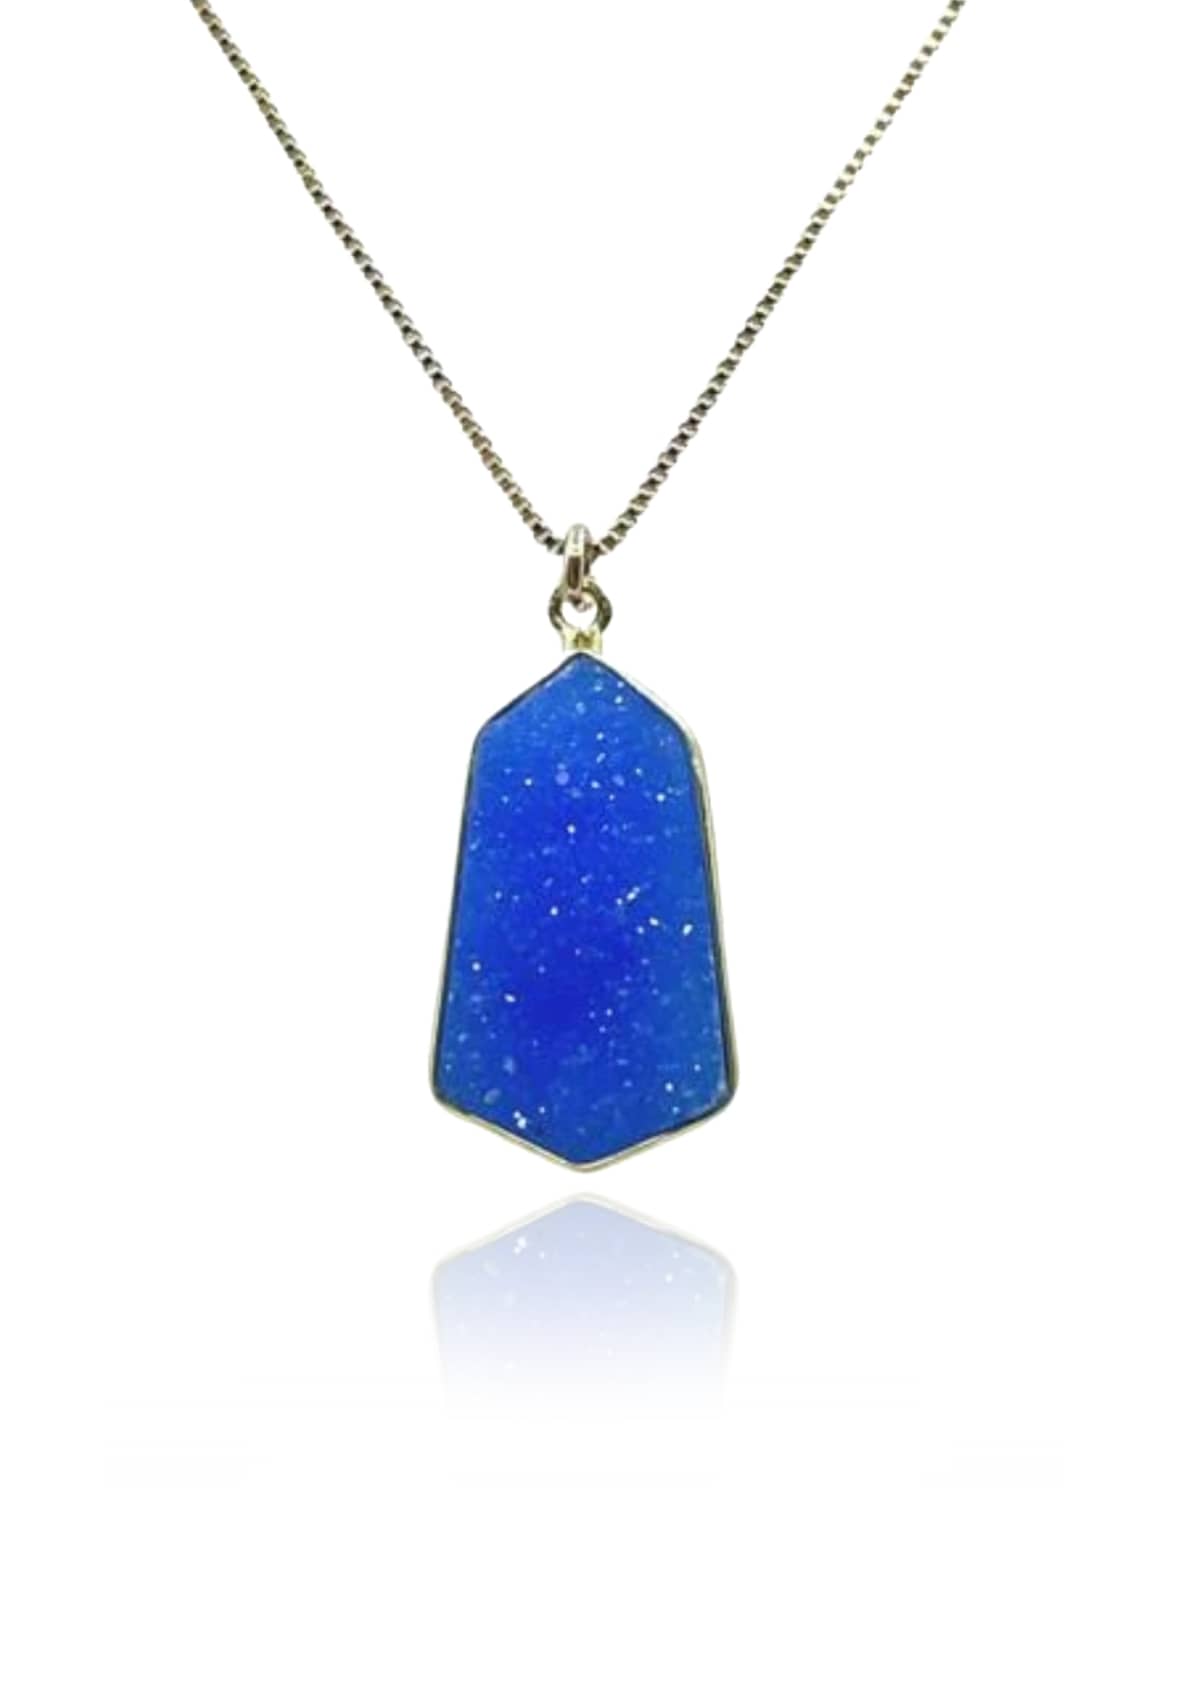 Hexagonal Stone Chain Necklace - Blue Druzy -Athena Designs- Ruby Jane-